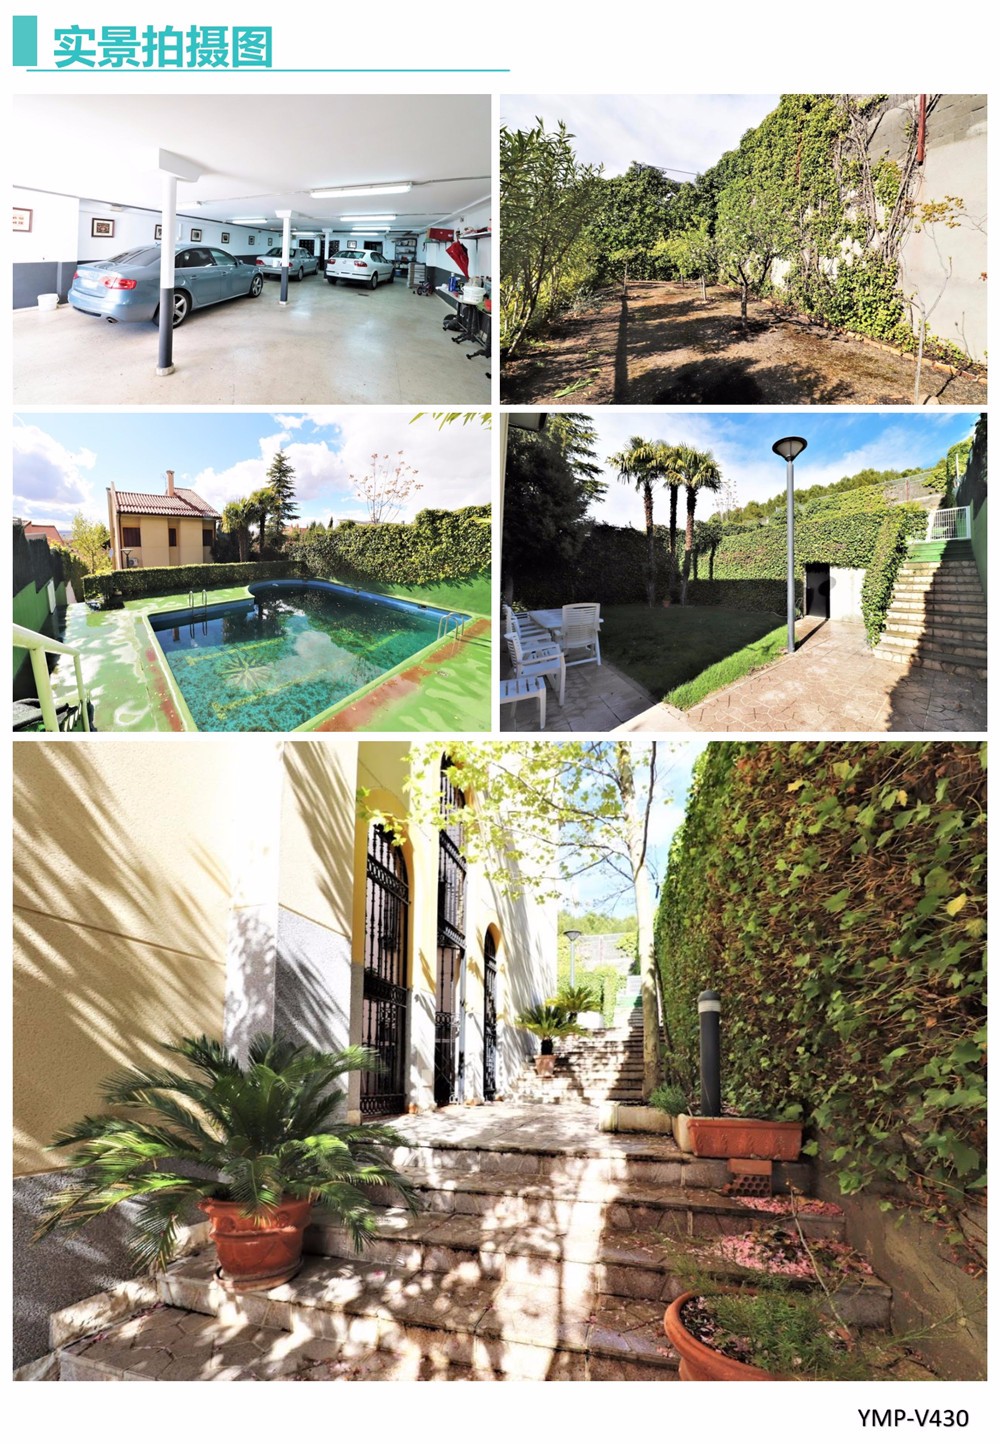 马德里房产：里瓦斯区豪华花园别墅8室4卫 490平米